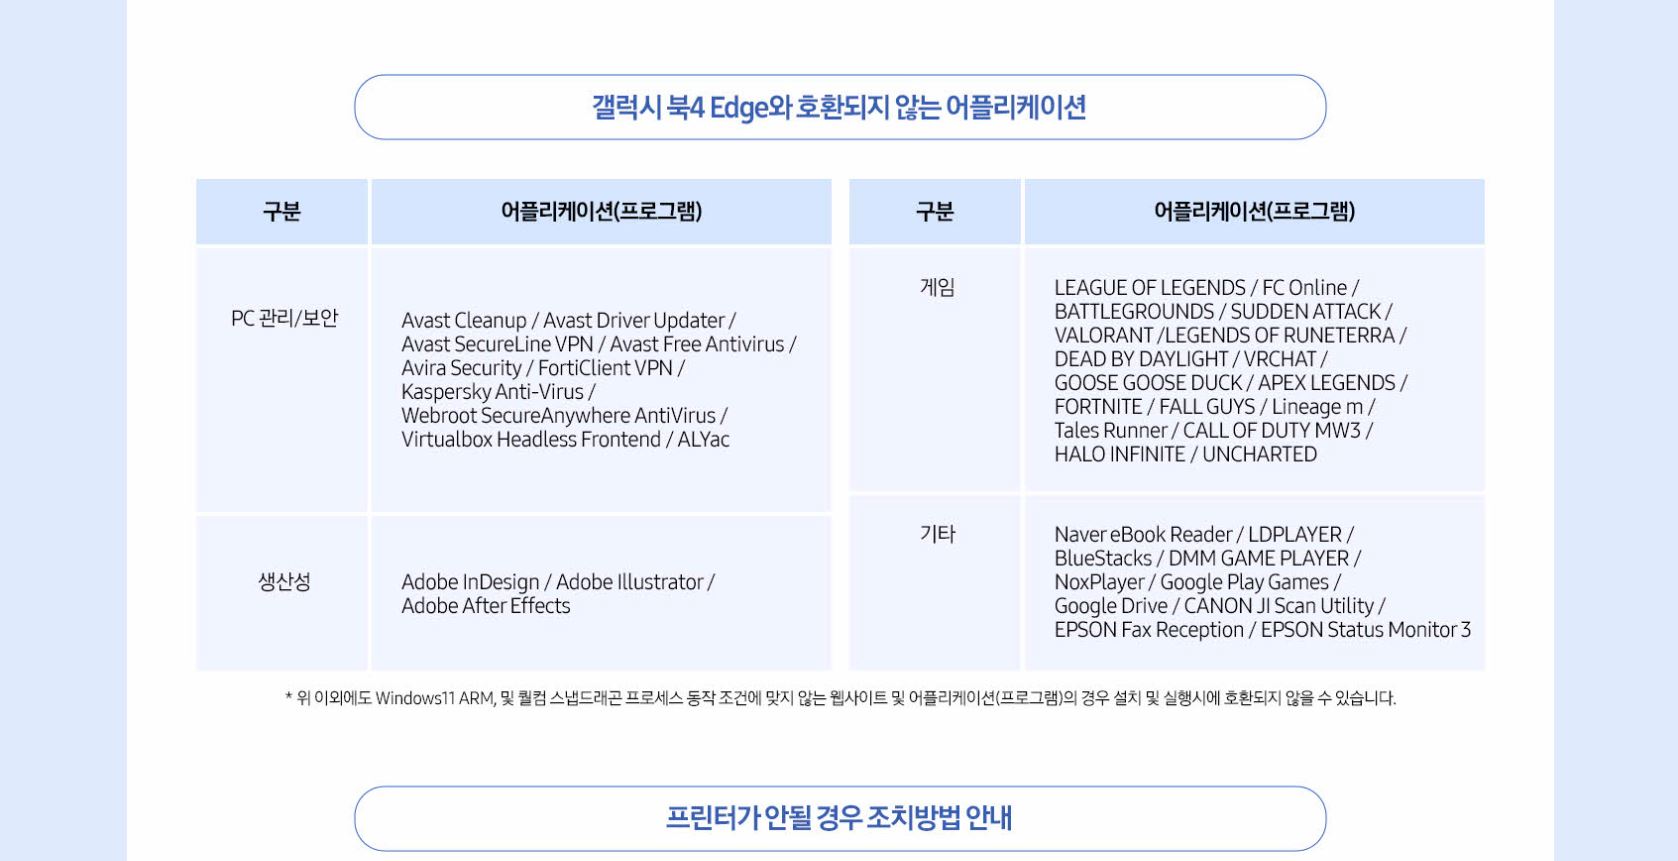 Une capture d'écran du site Web de Samsung Corée du Sud affichant des applications non compatibles avec le Galaxy Book4 Edge